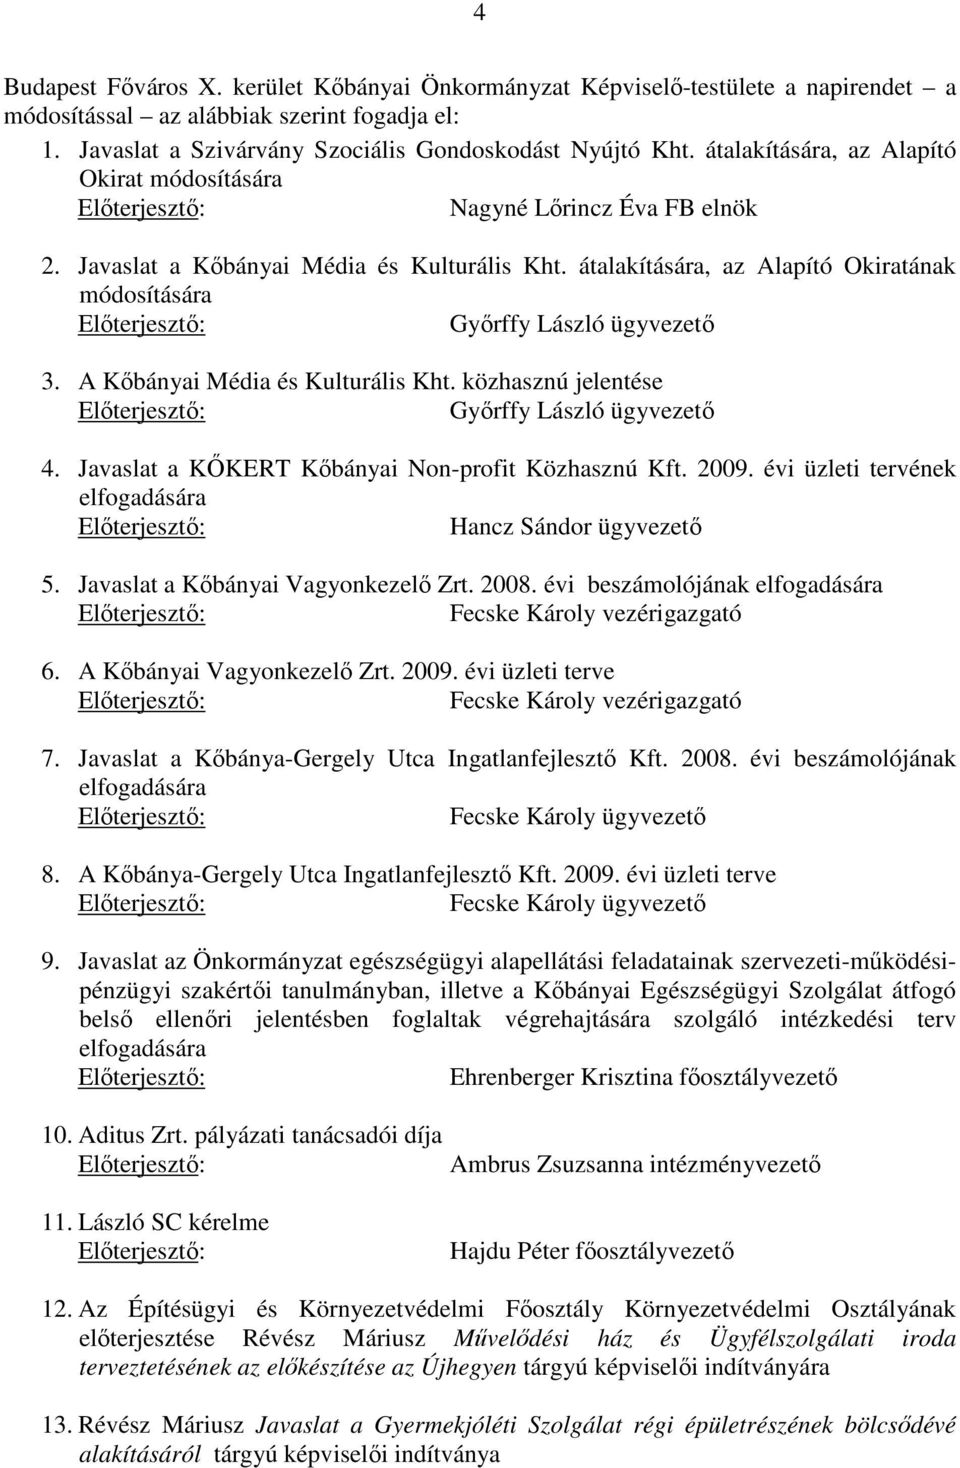 A Kőbányai Média és Kulturális Kht. közhasznú jelentése Győrffy László ügyvezető 4. Javaslat a KŐKERT Kőbányai Non-profit Közhasznú Kft. 2009.